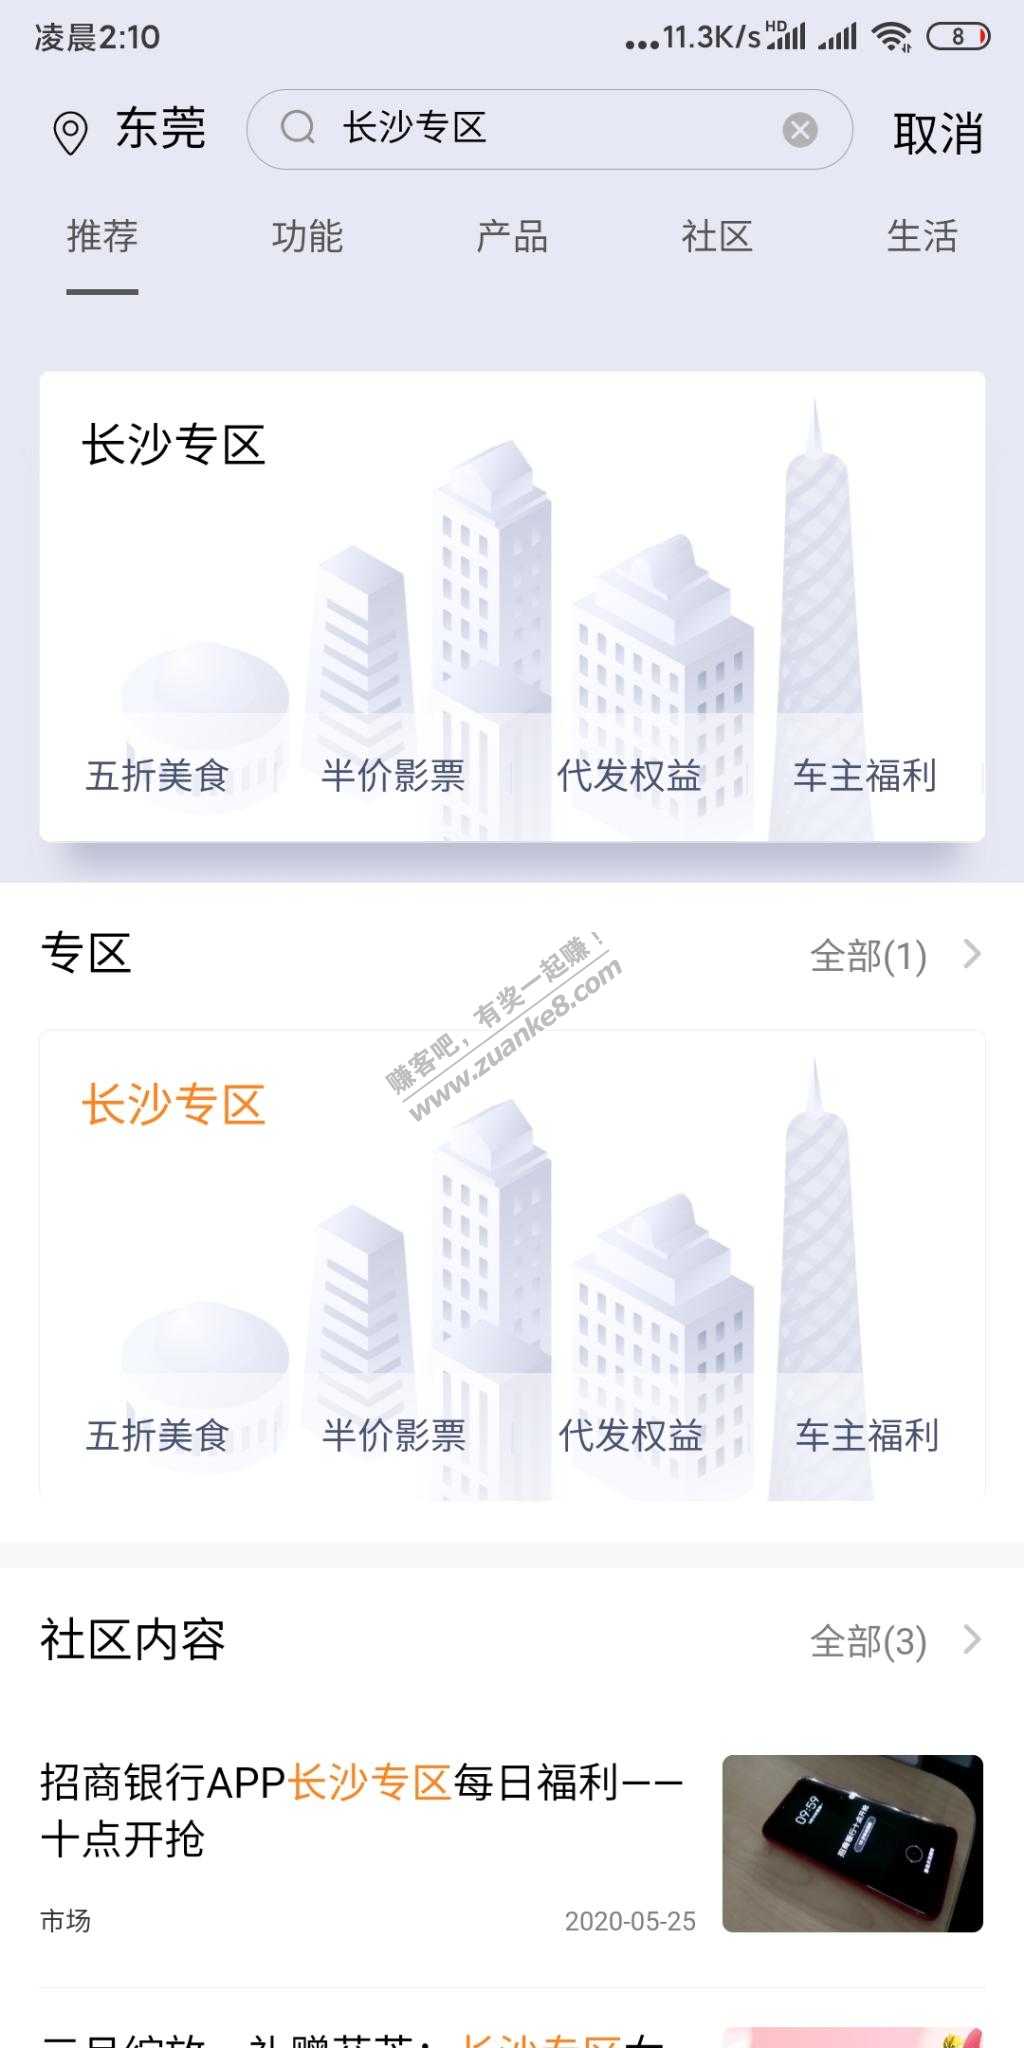 招商长沙领20饭票-惠小助(52huixz.com)